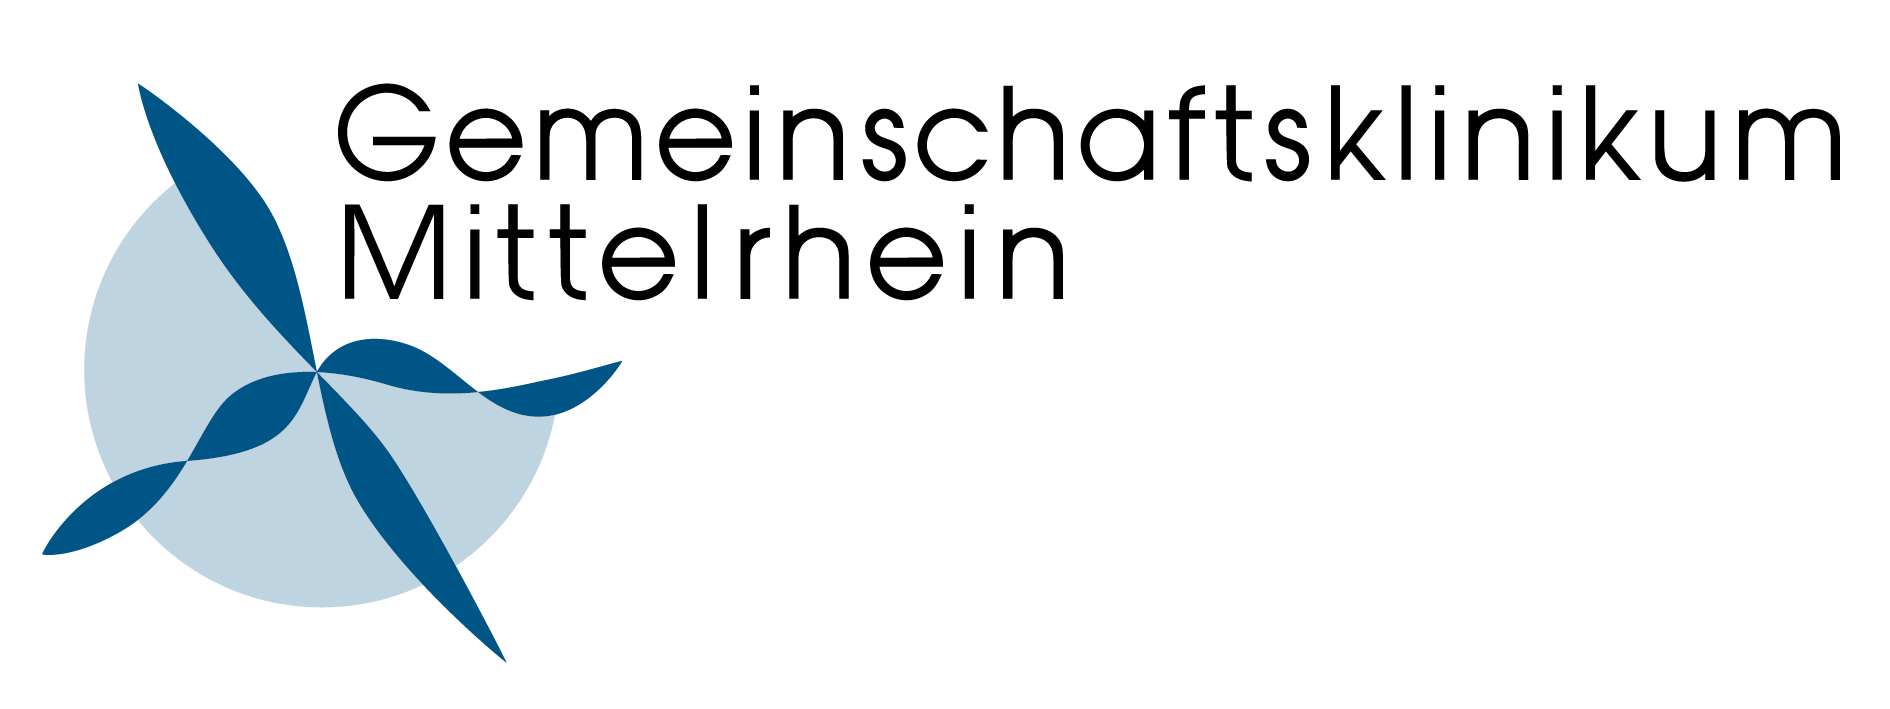 Gemeinschaftsklinikum Mittelrhein Logo